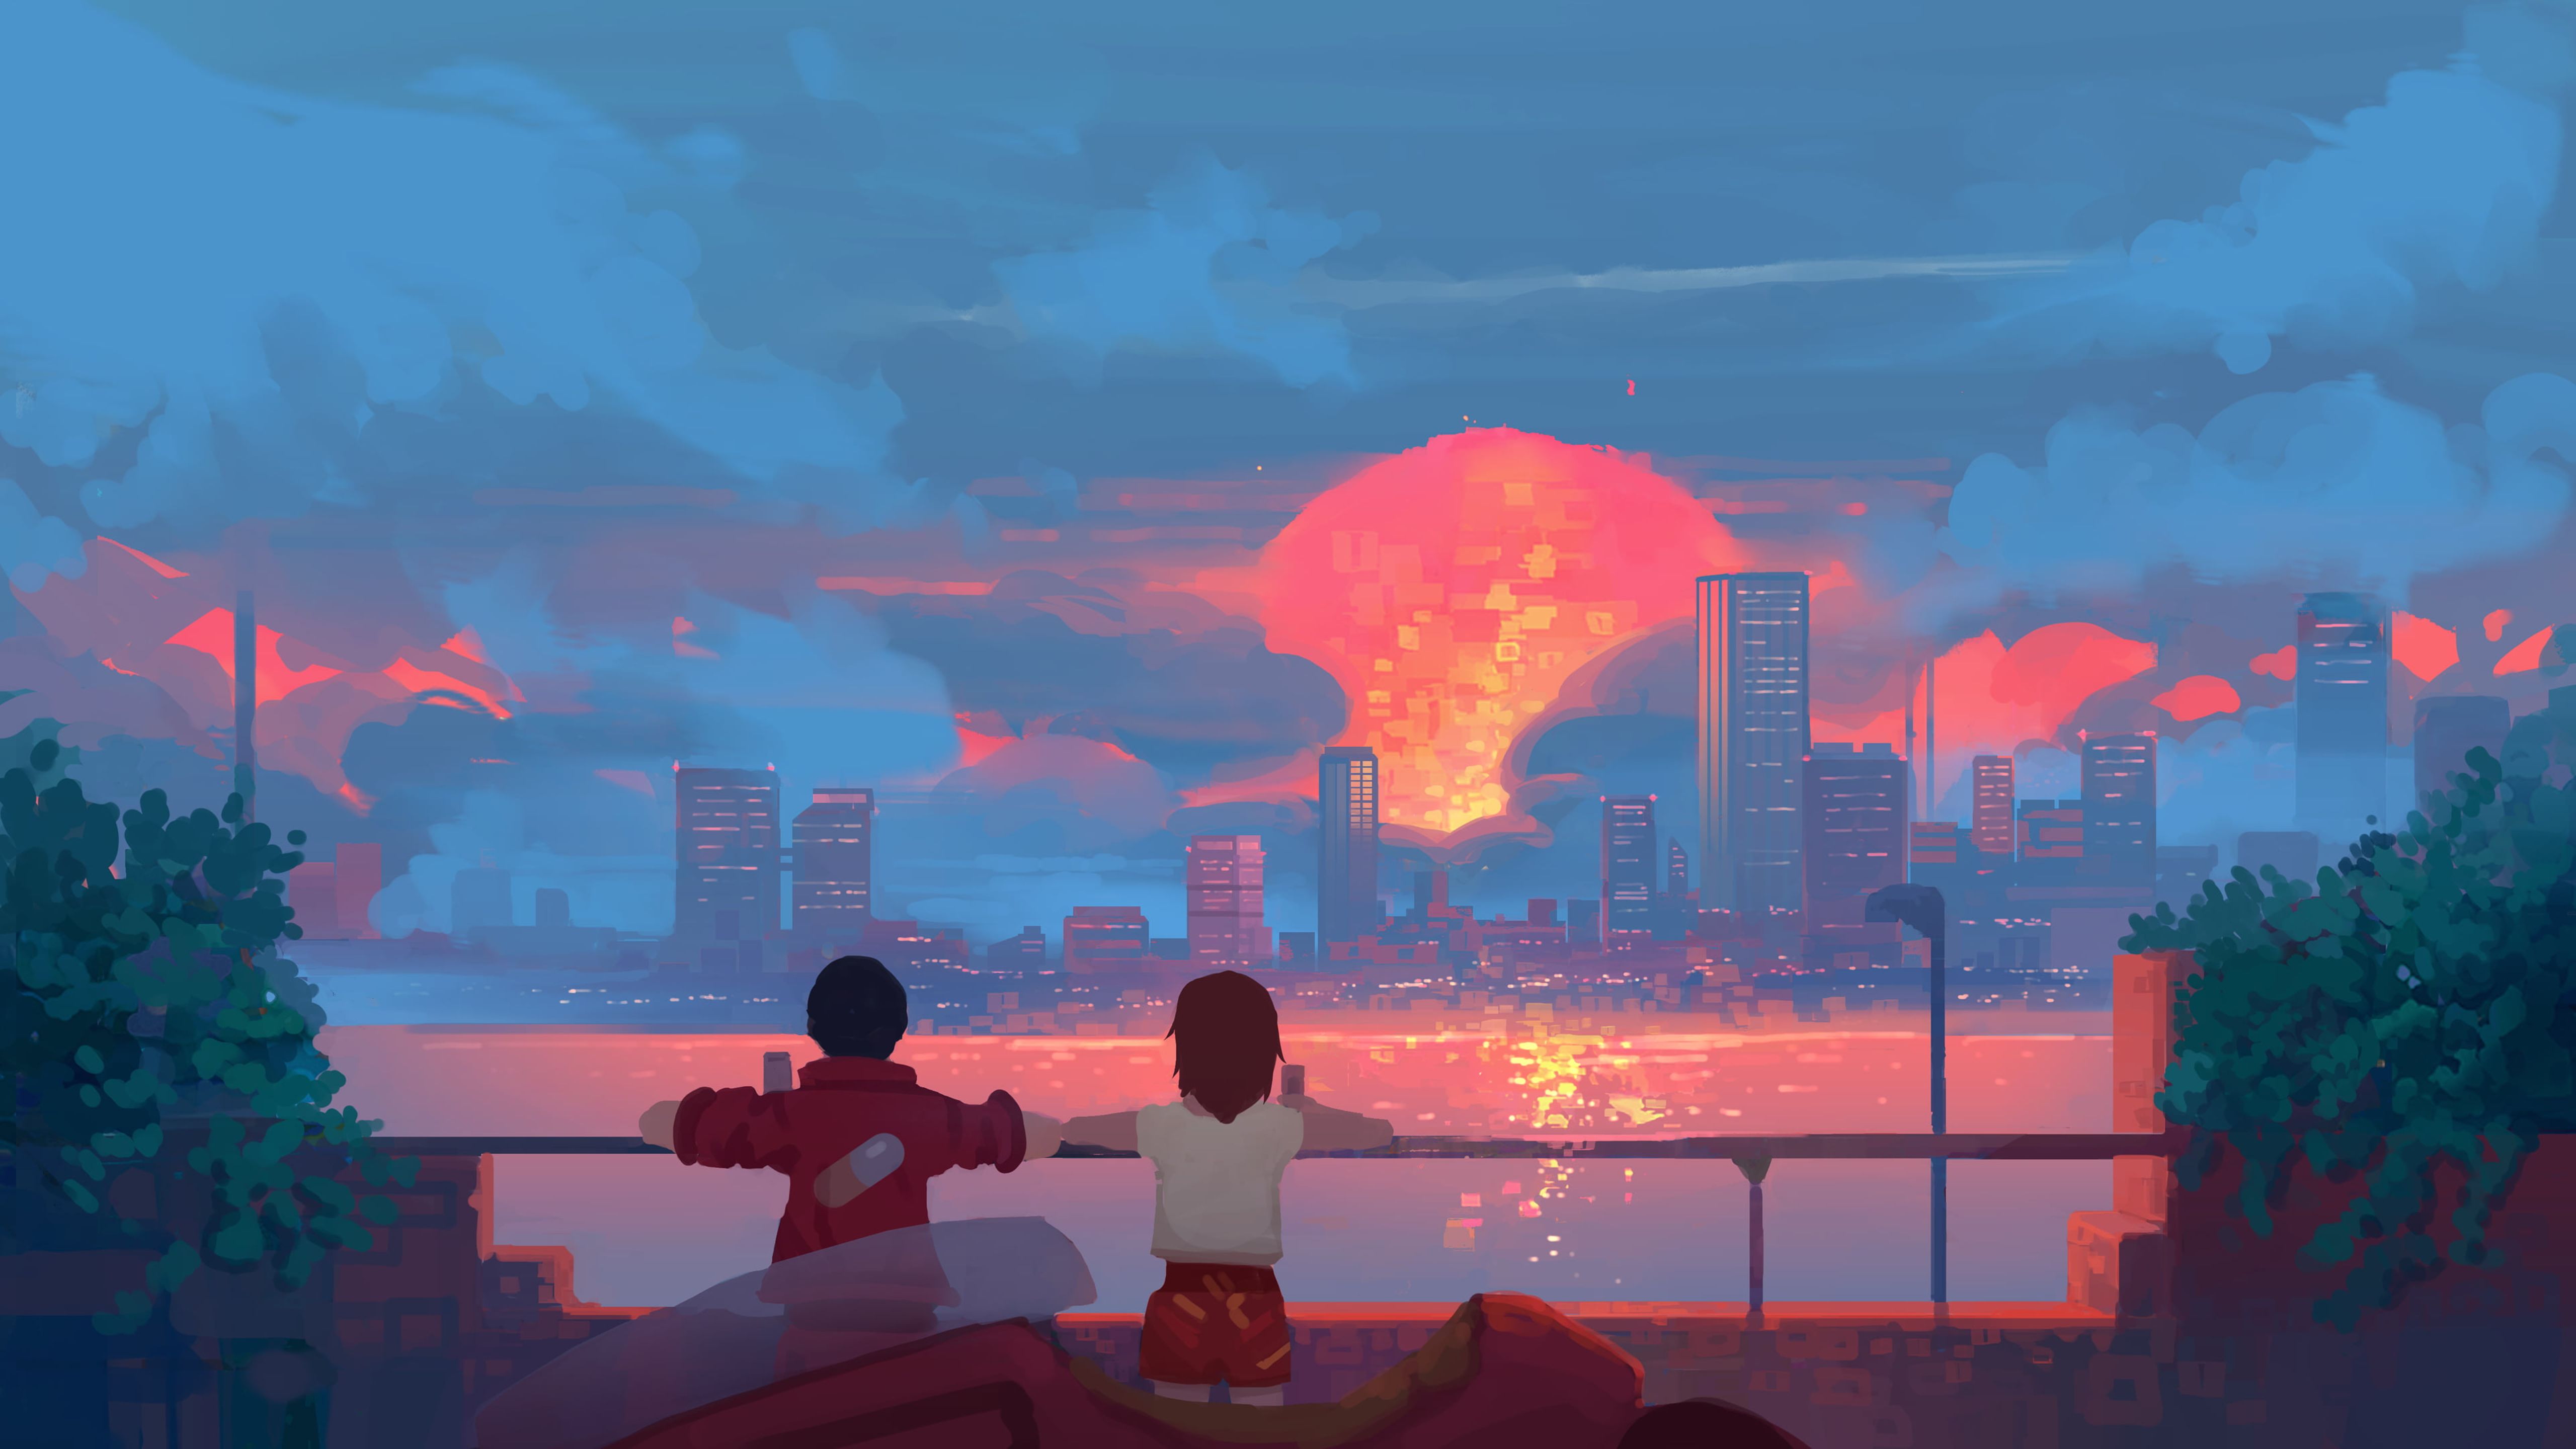 The Sunset. Papel de parede pc, Imagens inspiradoras, Animes wallpaper